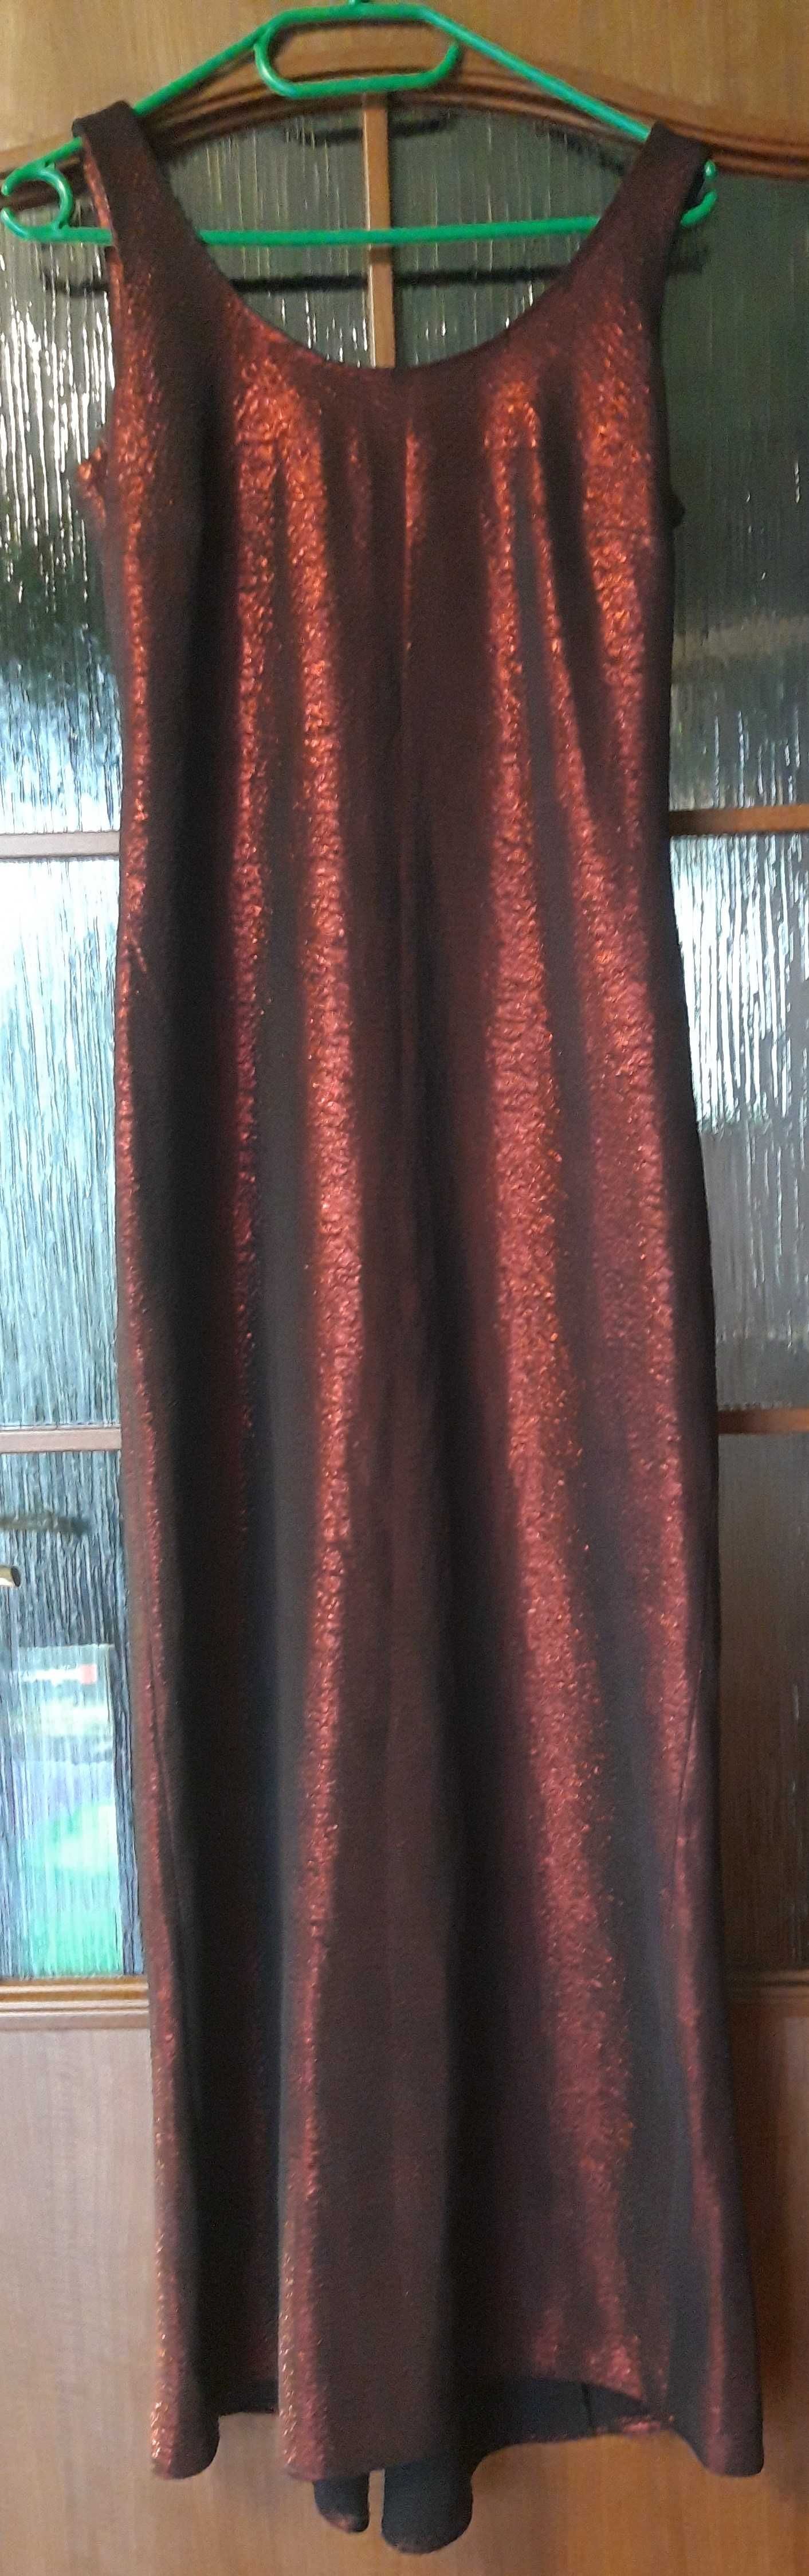 Sukienka bordowo czarna lekki połysk Rozmiar S/36 + szal